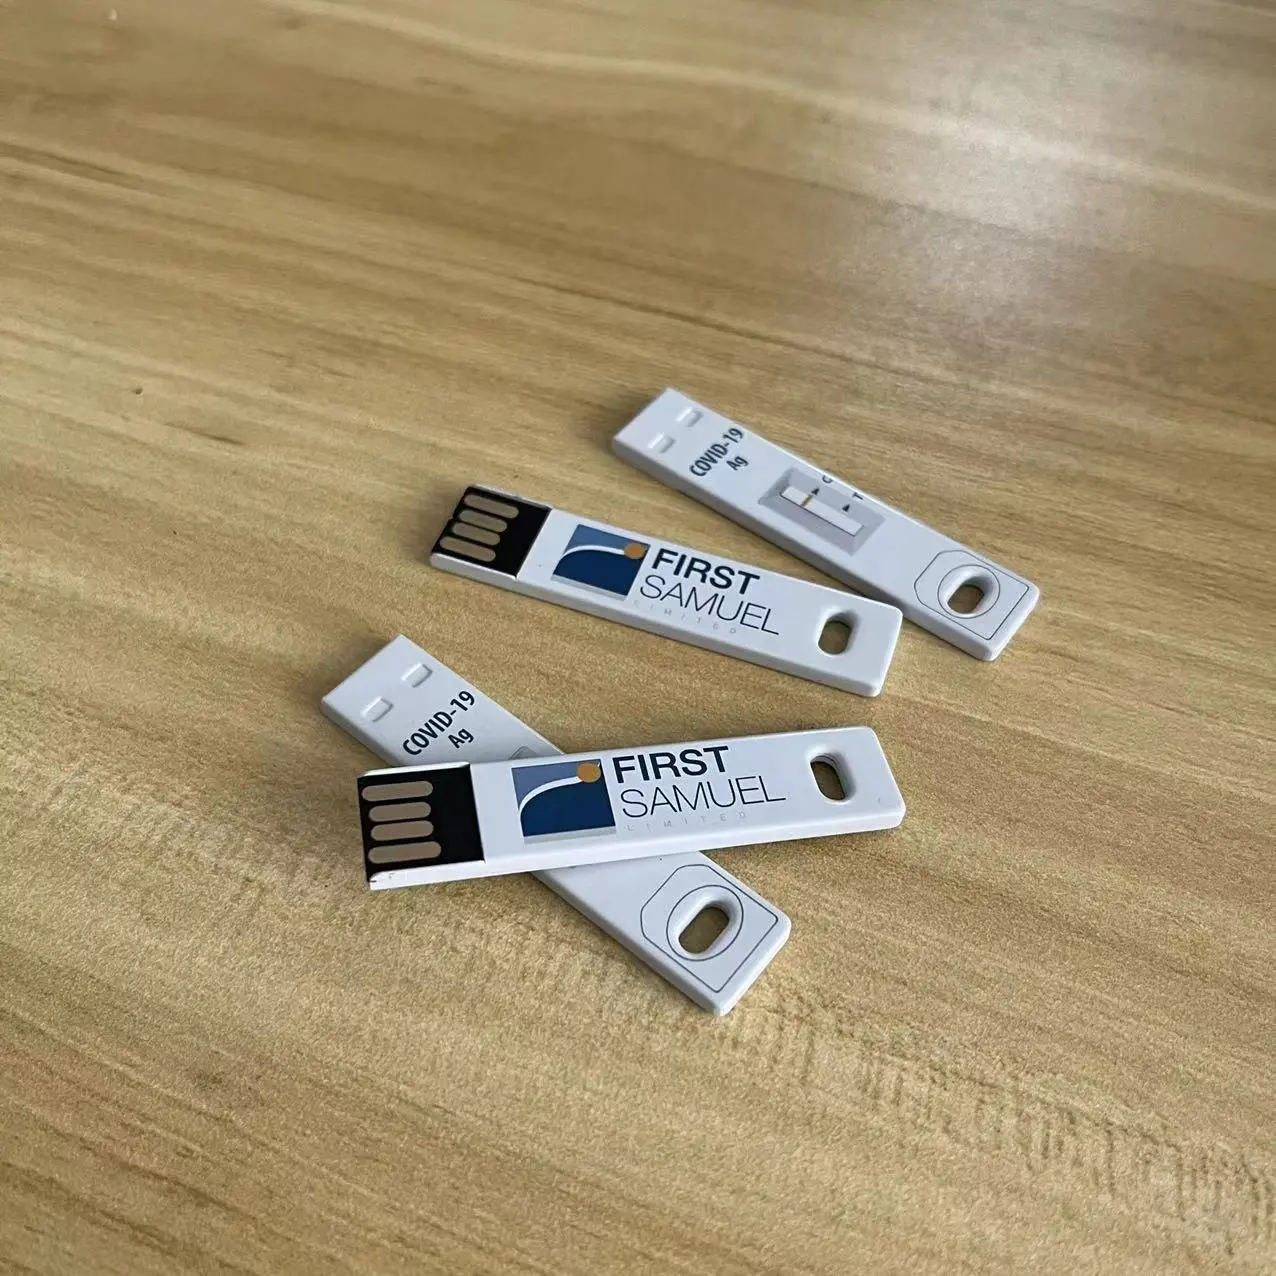 Whosale chiavetta usb in metallo da 16gb deriva chiave usb in metallo super sottile da 8GB con logo personalizzato come regali di cooperazione USB2.0 USB3.0